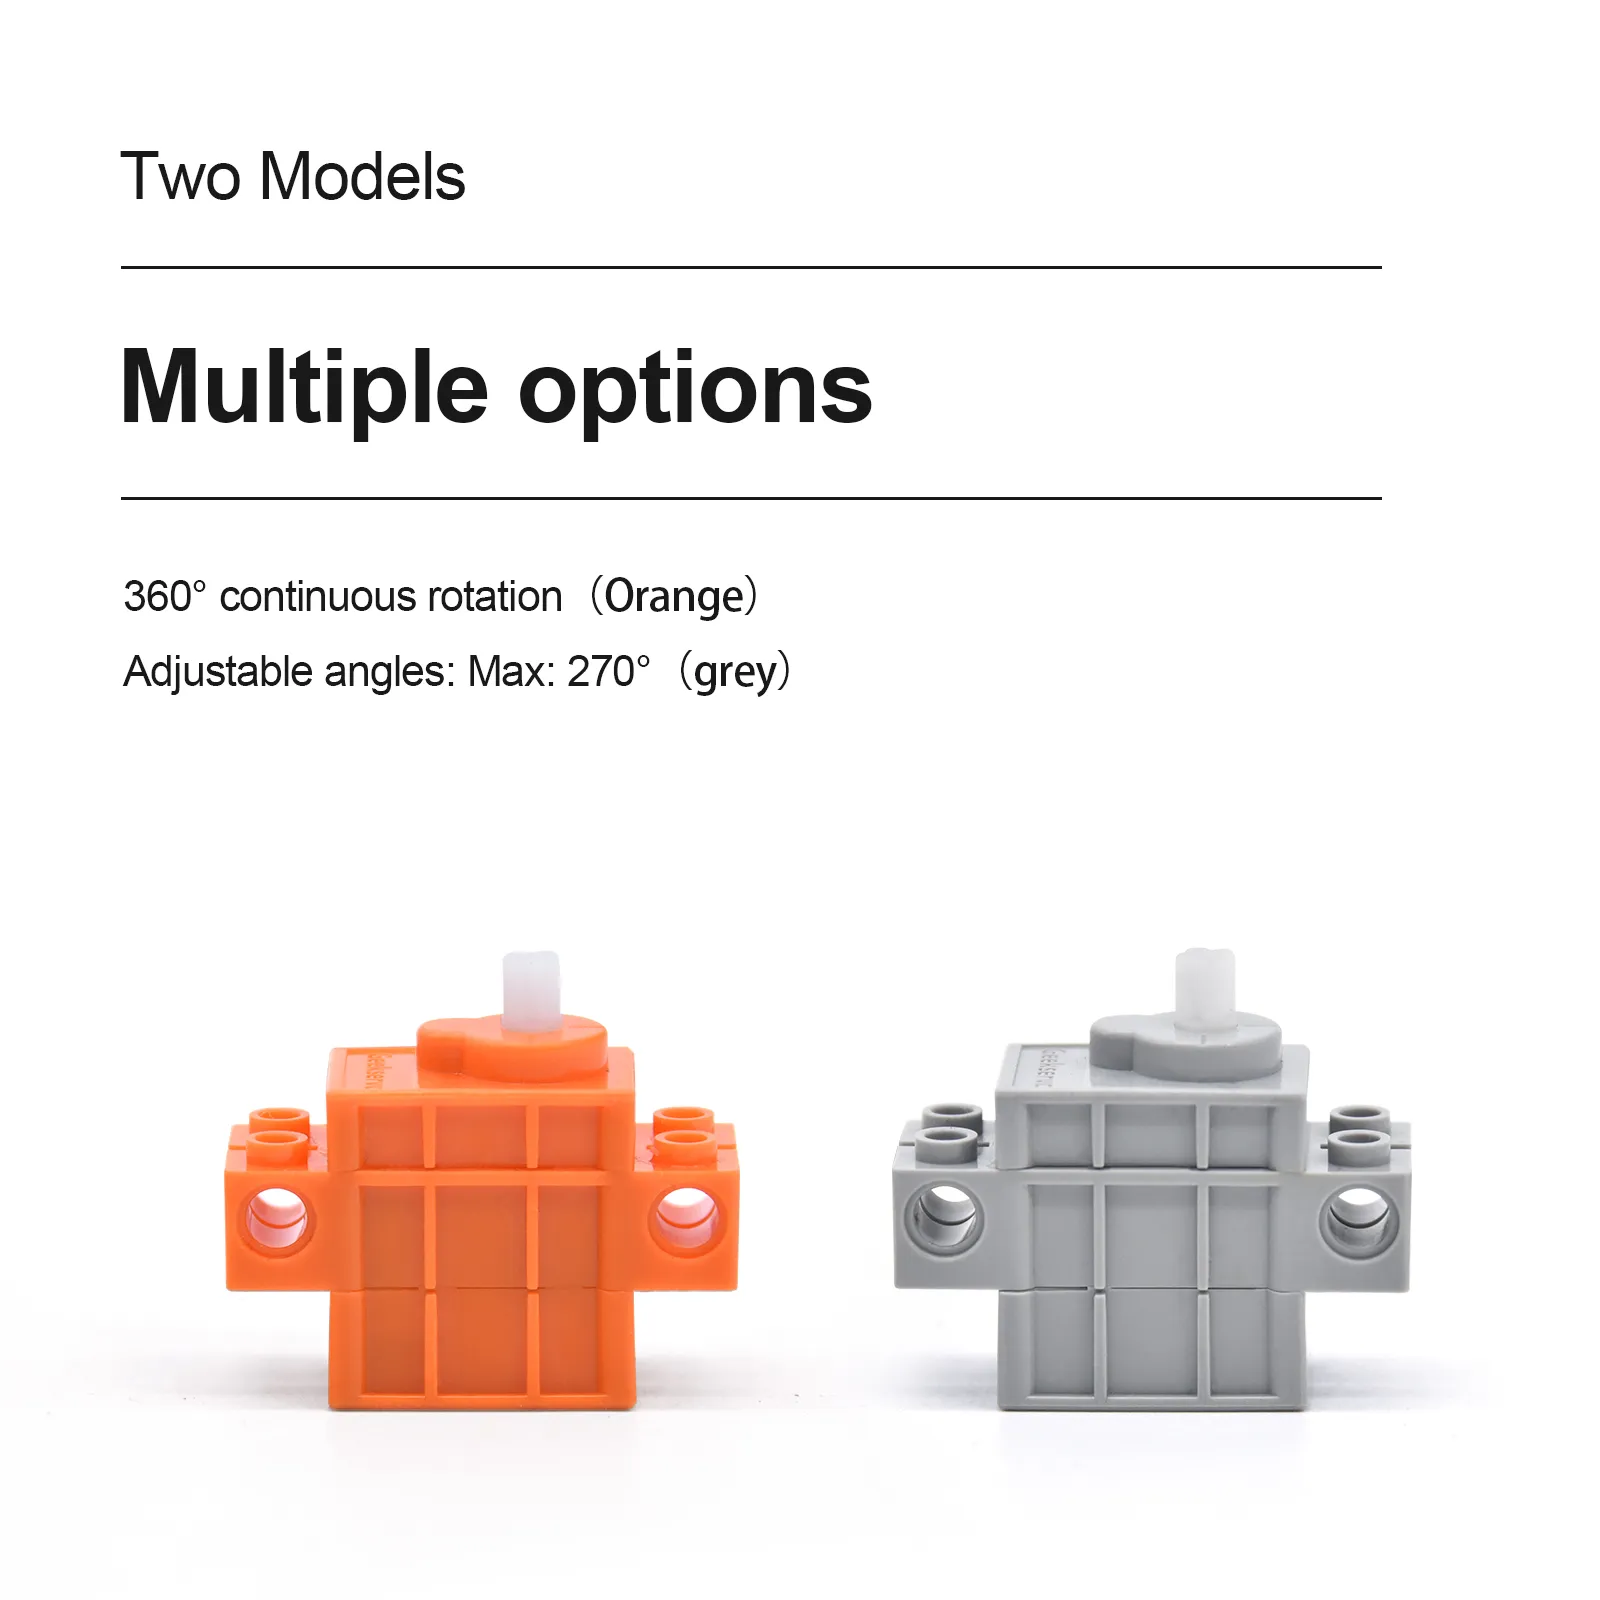 4PCSグレーオレンジオタクサーボレッドギアモータープログラム可能なDIYキット電子スマートカー用のレゴと互換性のあるワイヤーと互換性